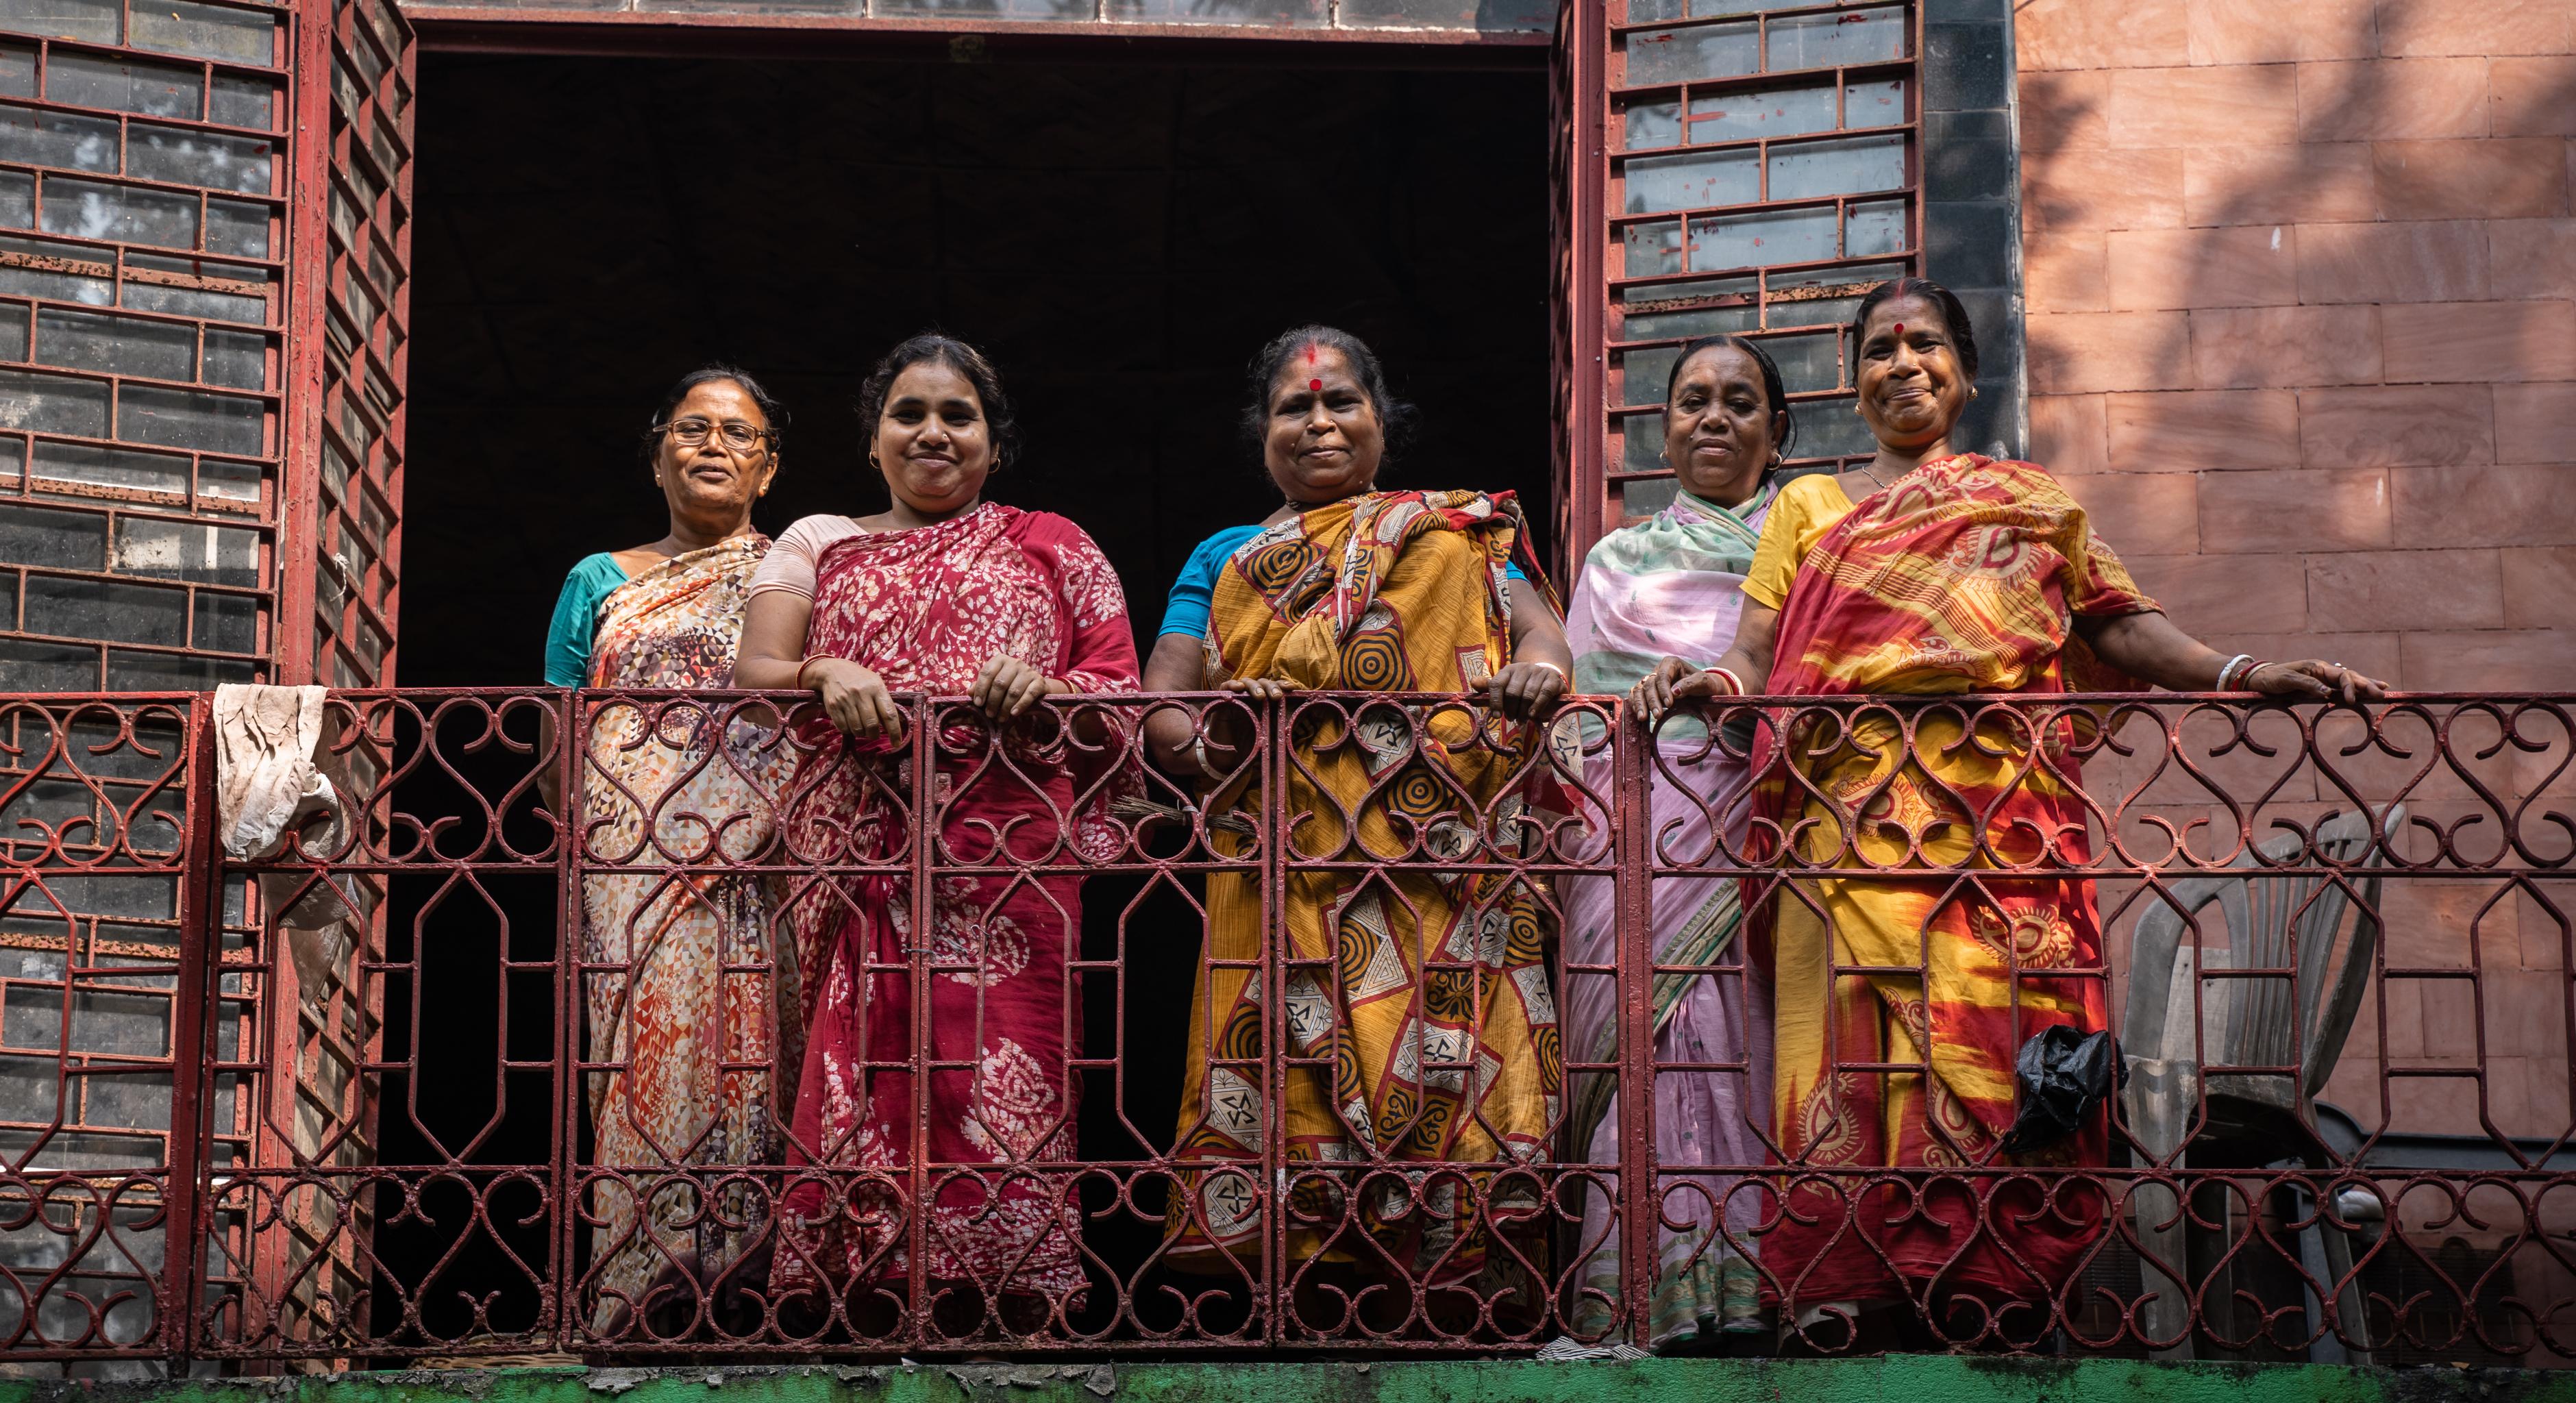 Frauen in bunten Saris stehen auf einem Balkon und lächeln in die Kamera